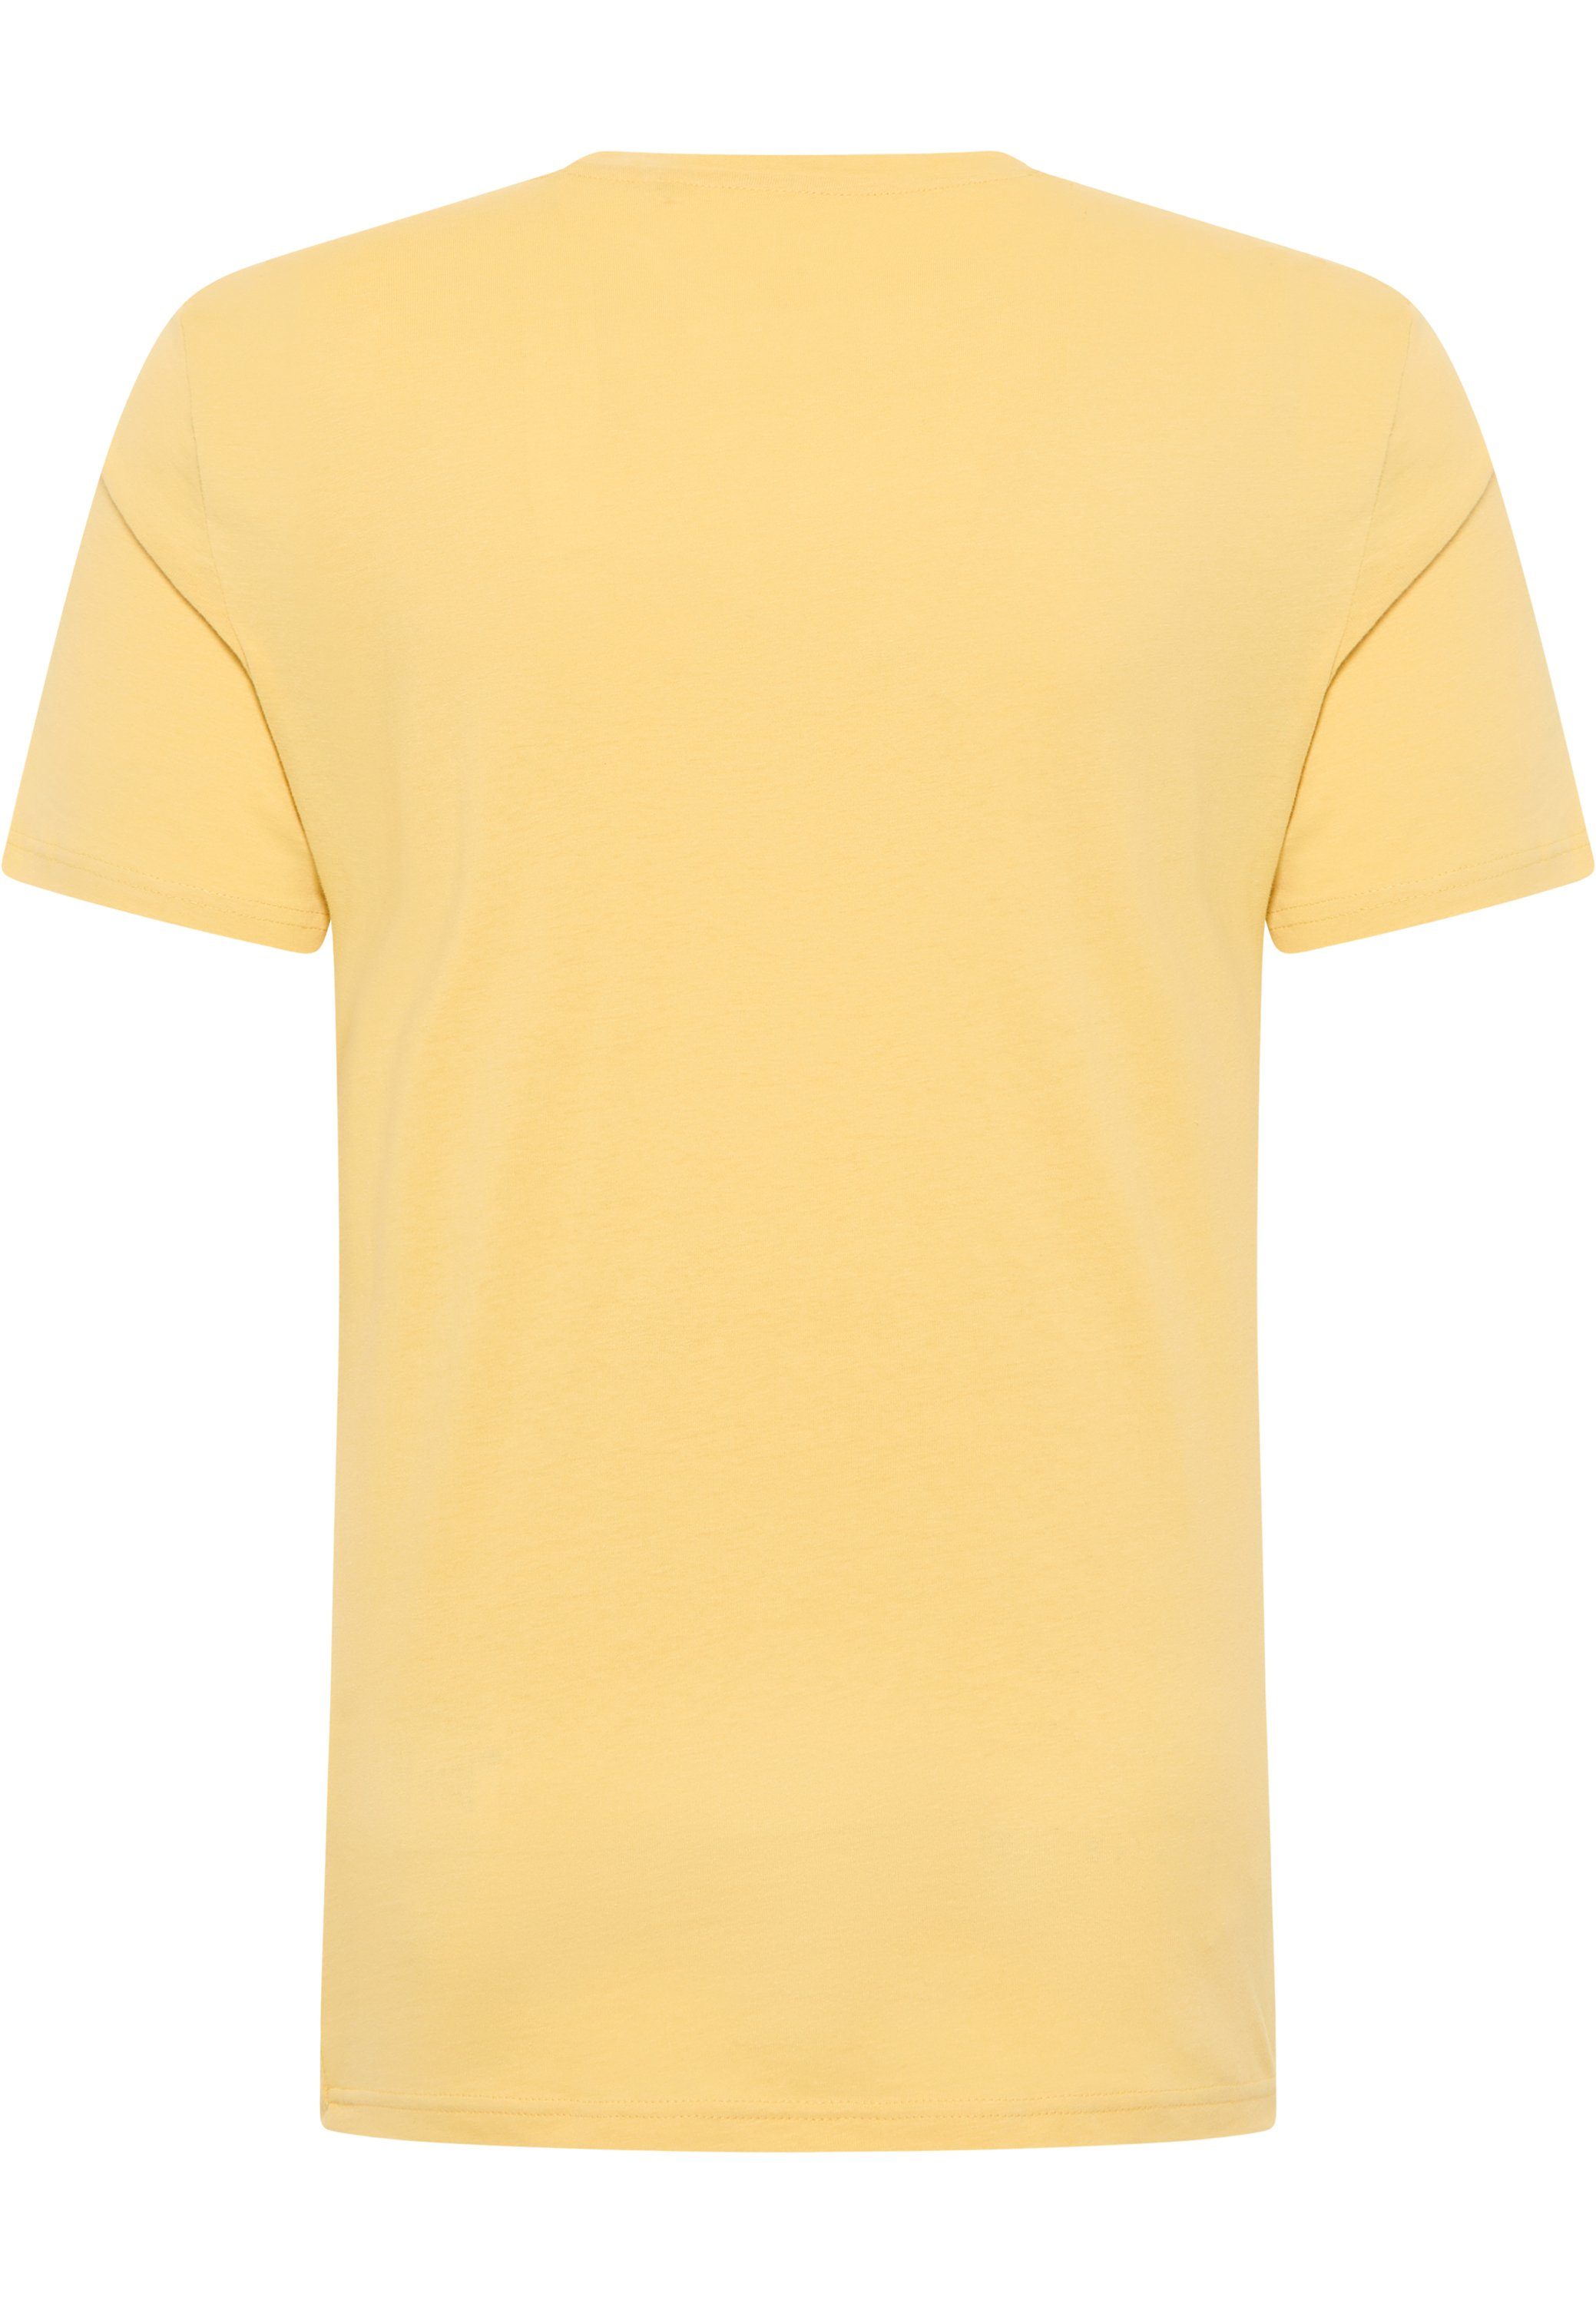 Mustang gelb MUSTANG Kurzarmshirt T-Shirt